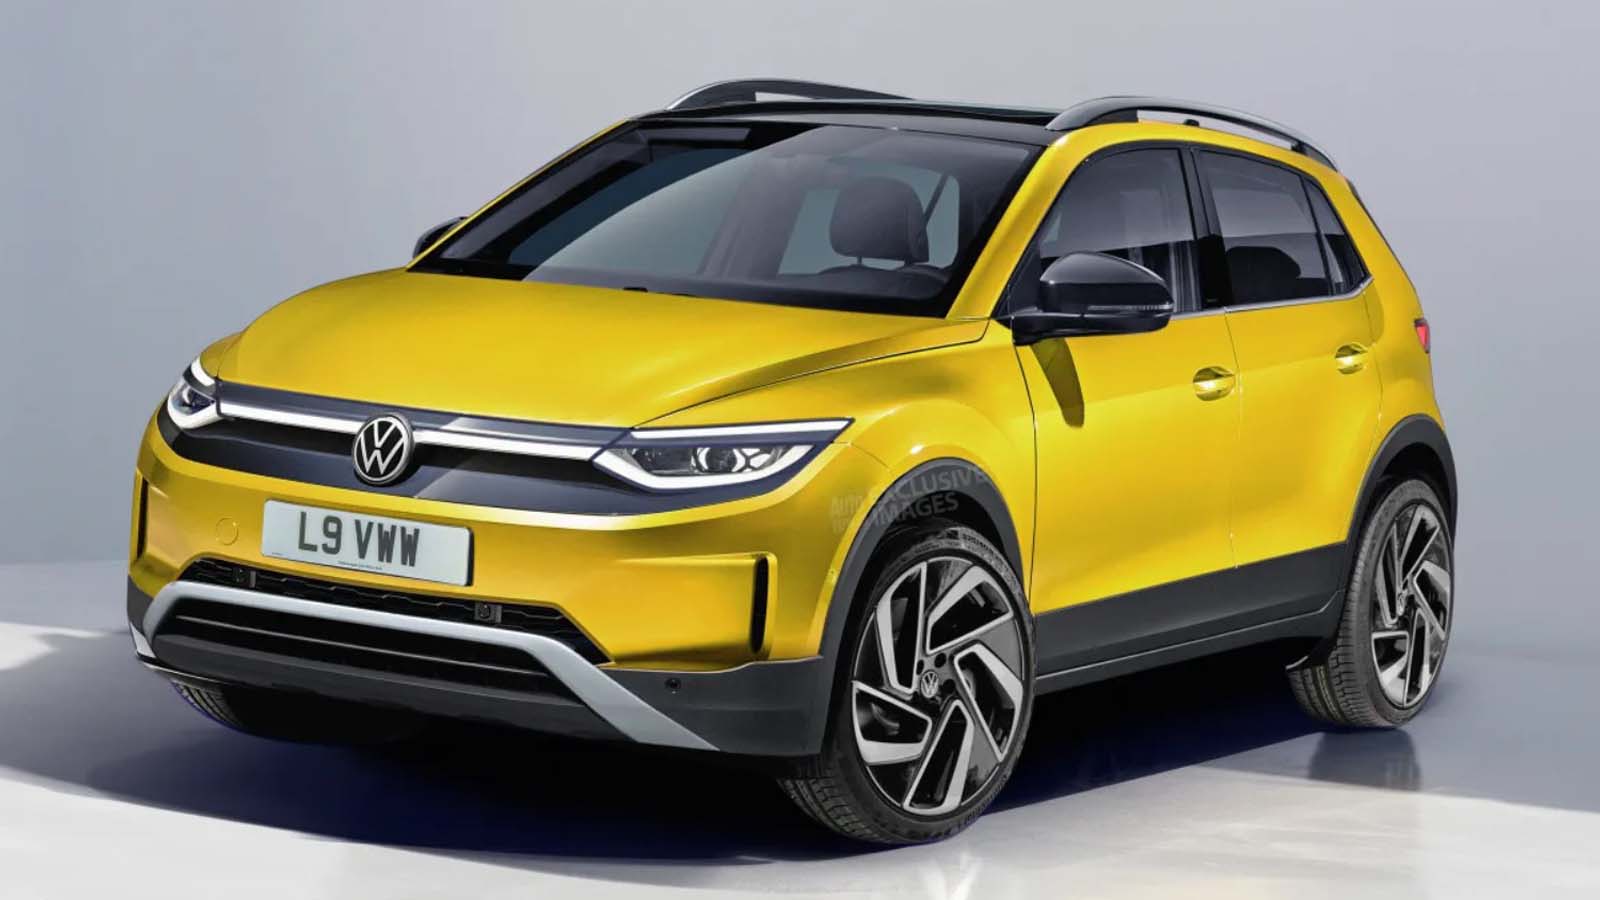 Volkswagen porta l'elettrificazione a un nuovo livello, offrendo un ID SUV ecologico a un prezzo che sorprenderà il mercato